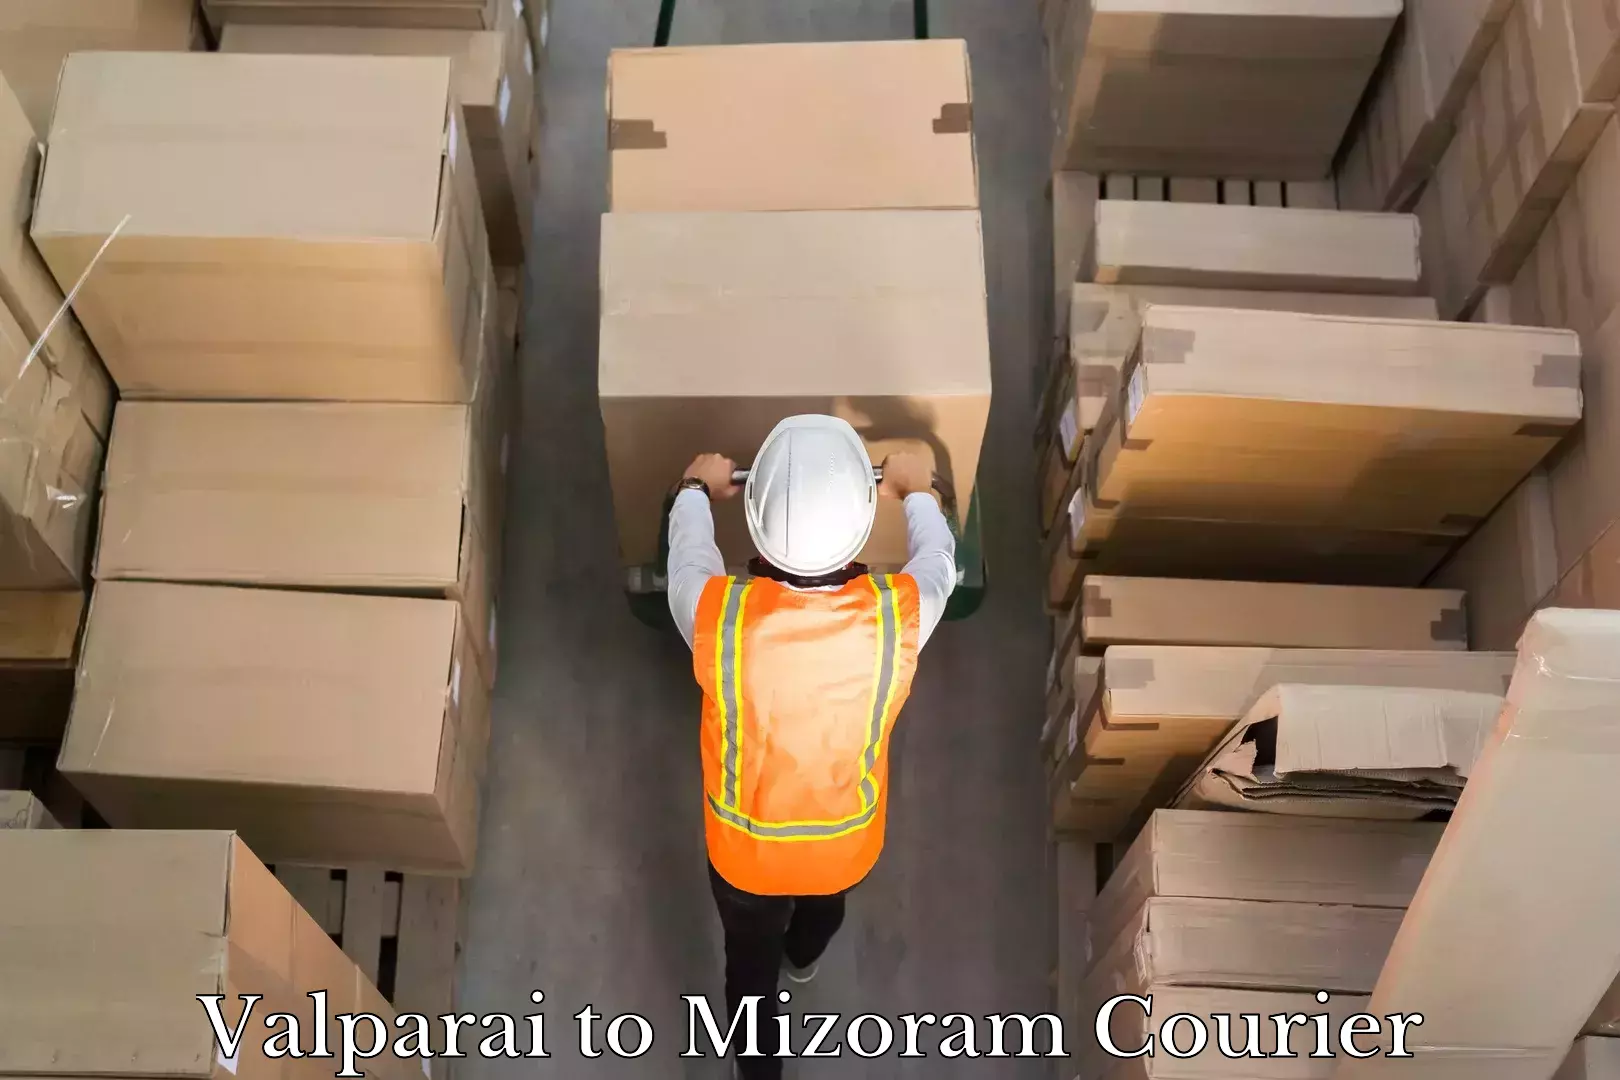 Multi-national courier services Valparai to Mizoram